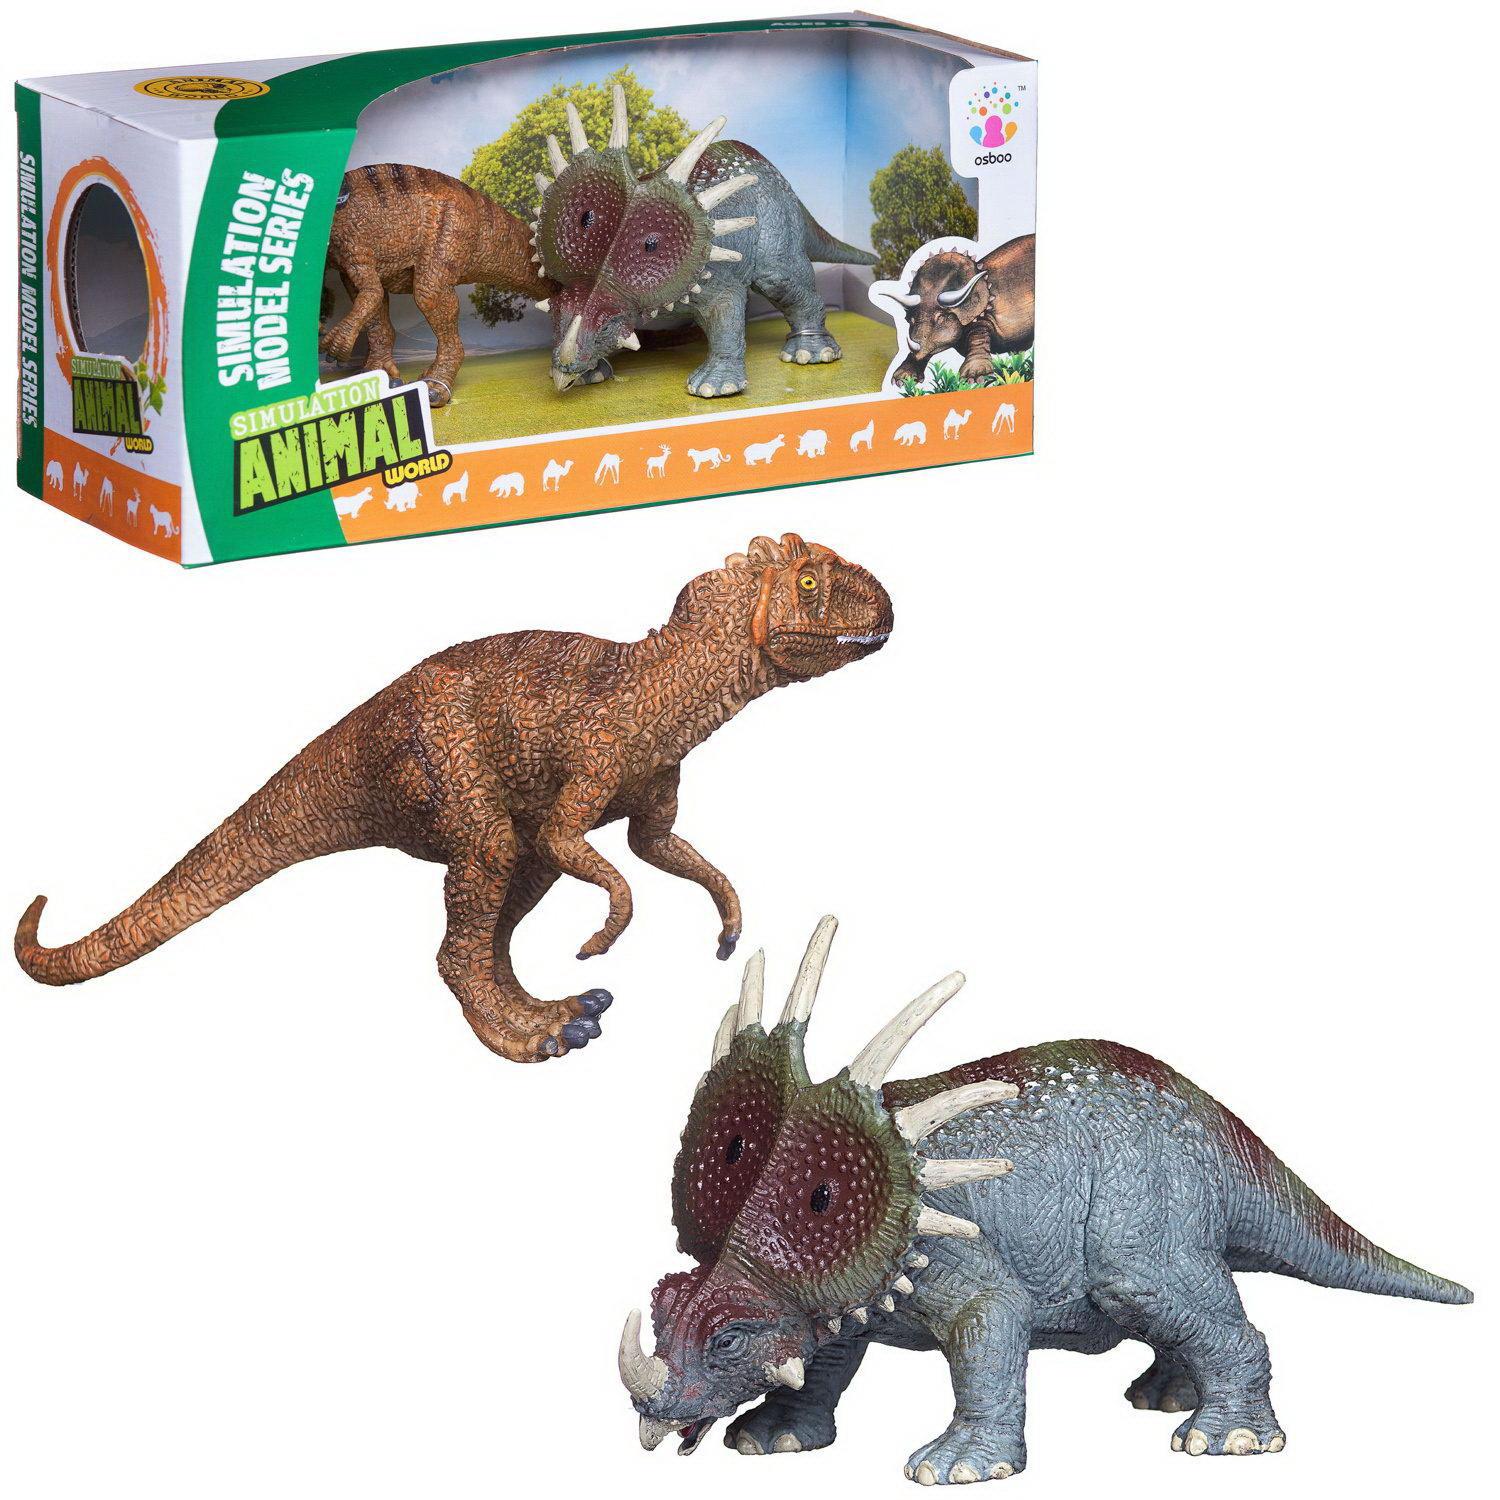 Купить WA-14586 набор2, Игровой набор Junfa В мире динозавров; серия 1 набор 2; WA-14586/набор2, Junfa toys,